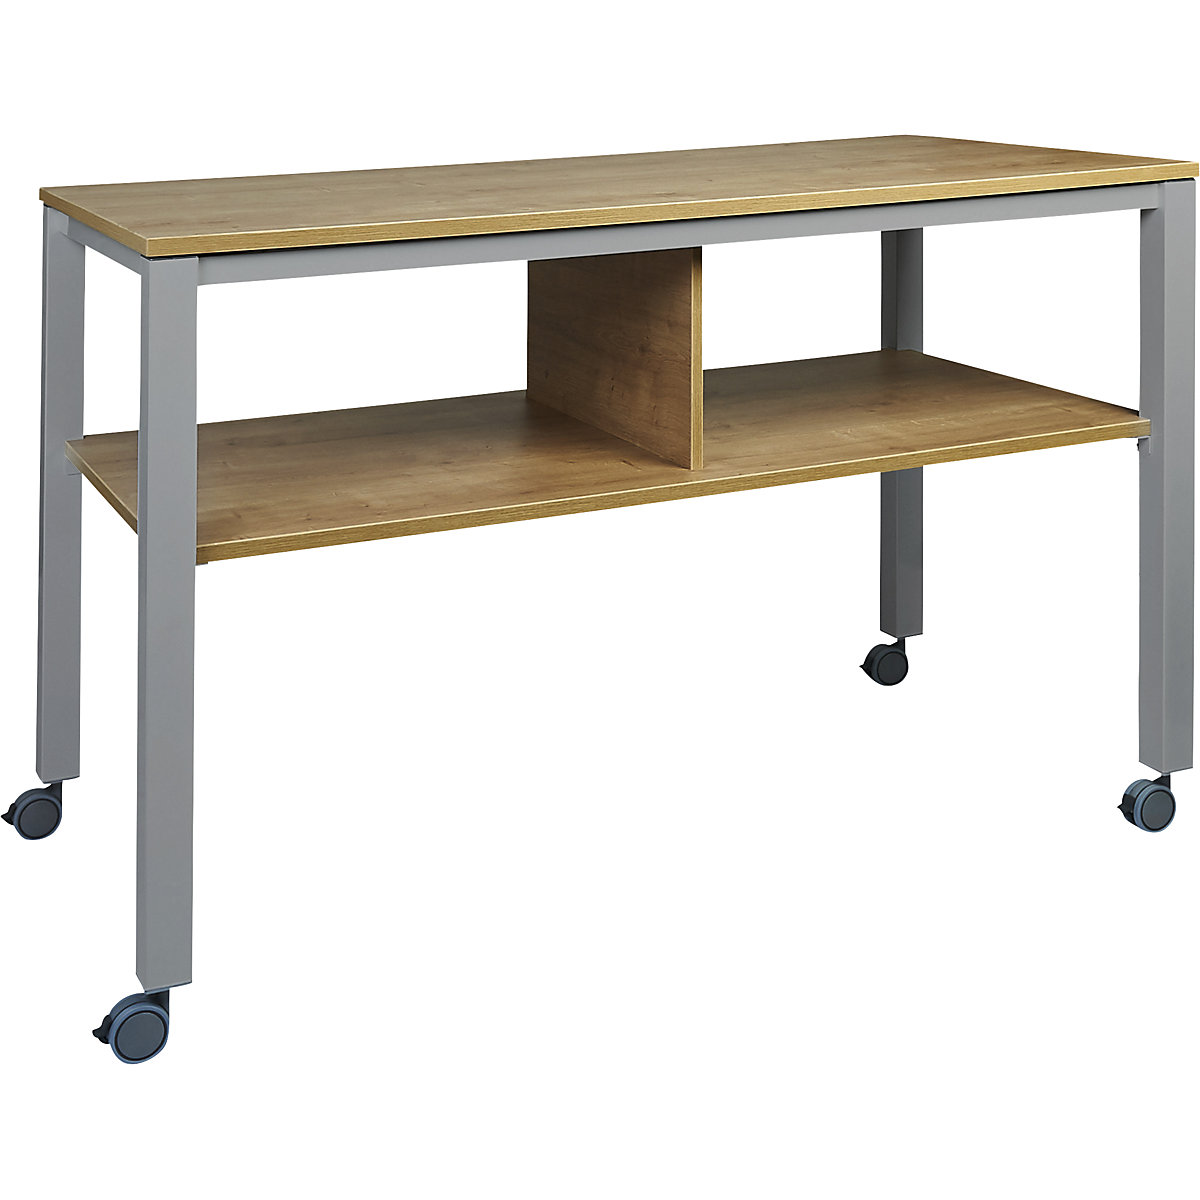 Multifunkční stůl E2008, mobilní, hliníkový stříbrný podstavec, deska dubový dekor-8